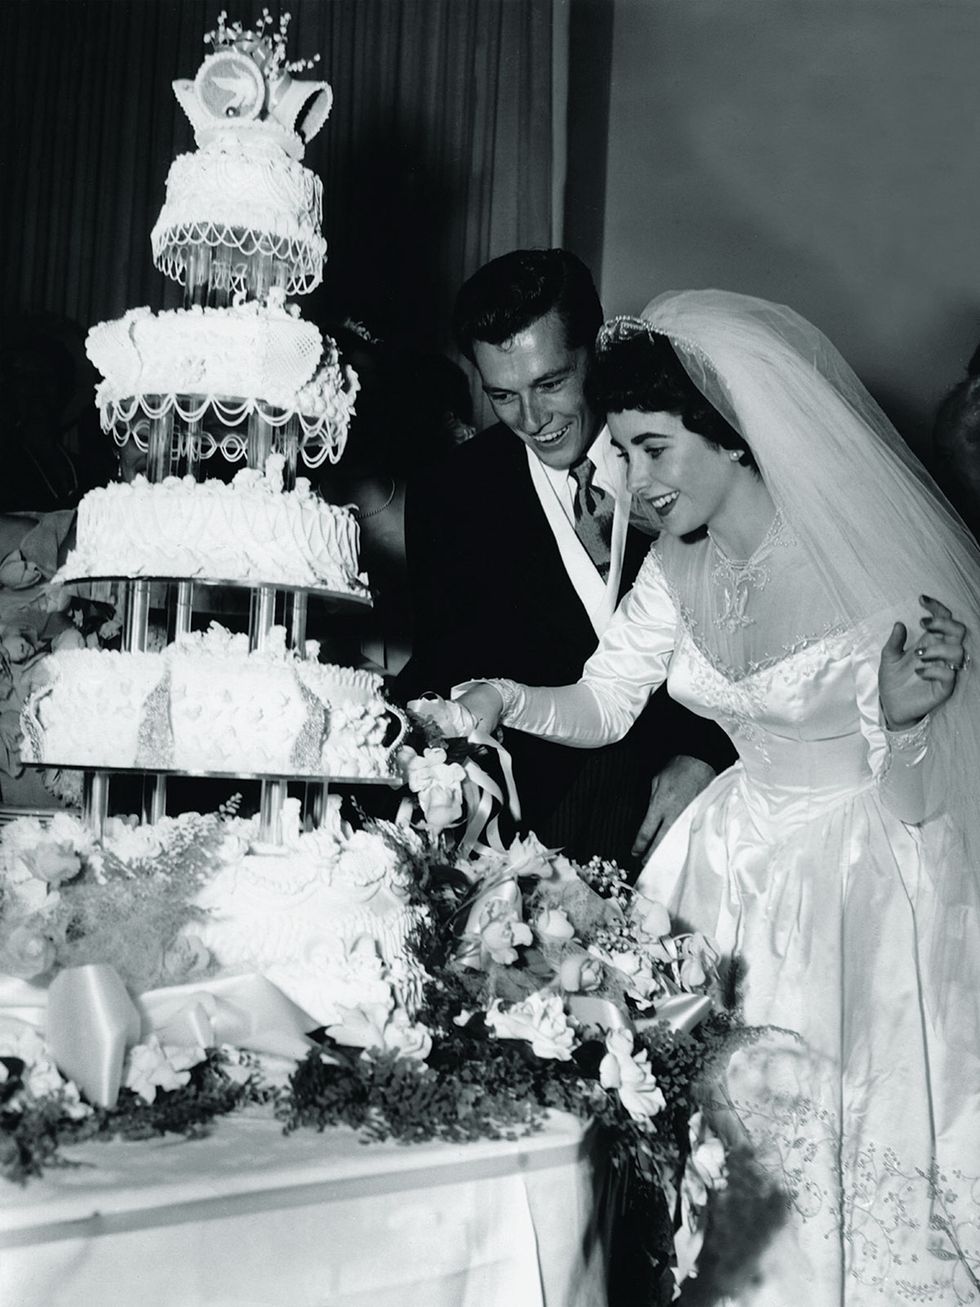 Photograph, Wedding cake, White, Black, Cake decorating, Wedding ceremony supply, Black-and-white, Cake, Icing, Sugar cake, 